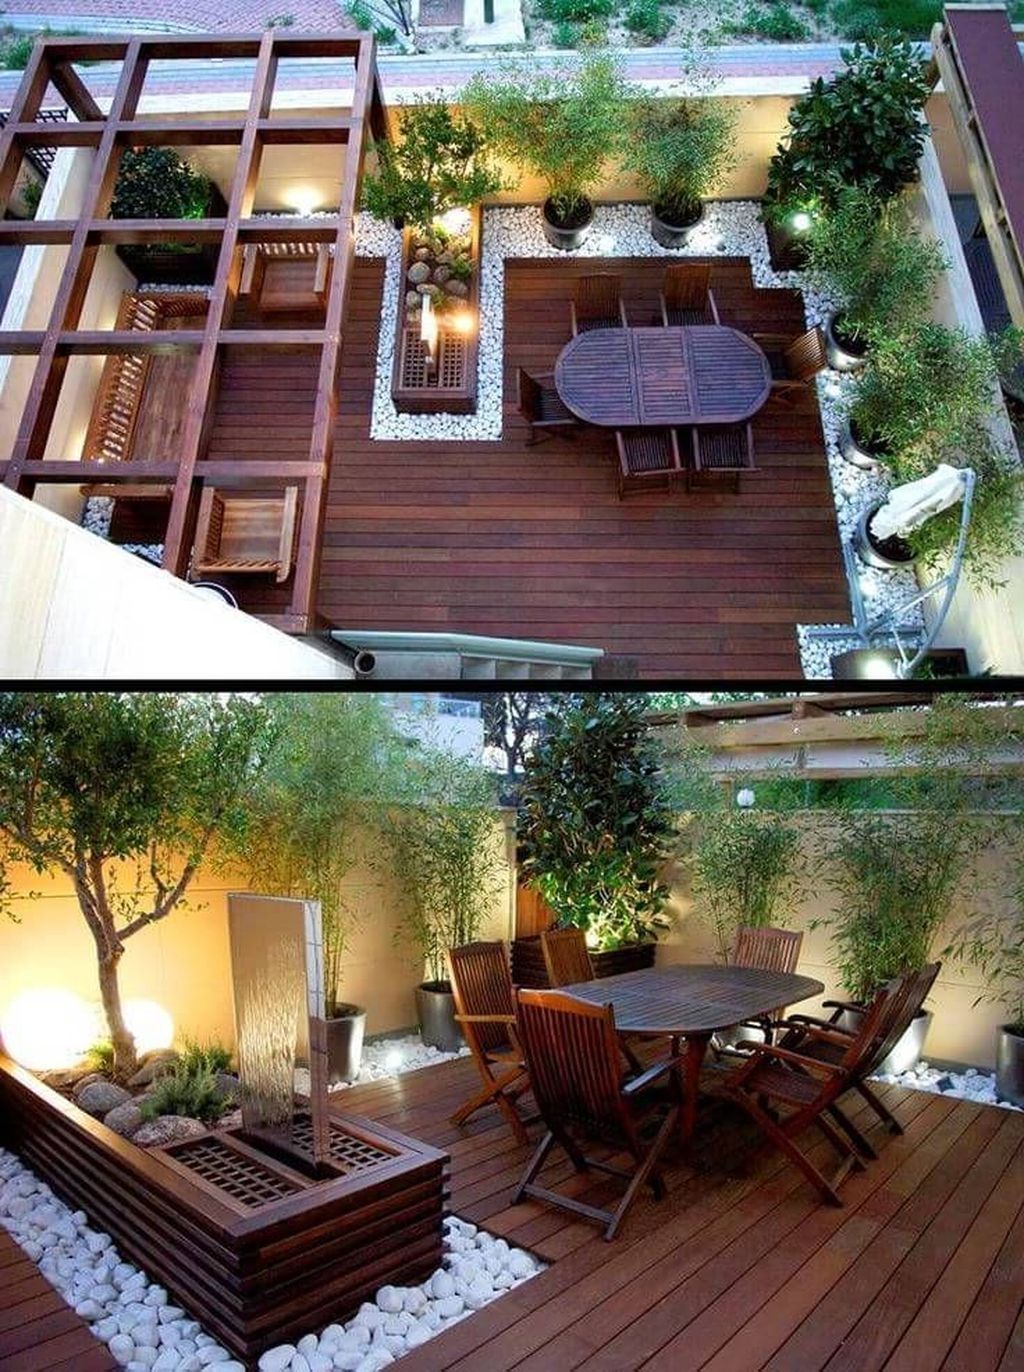 طراحی باغچه حیاط و فضای سبز